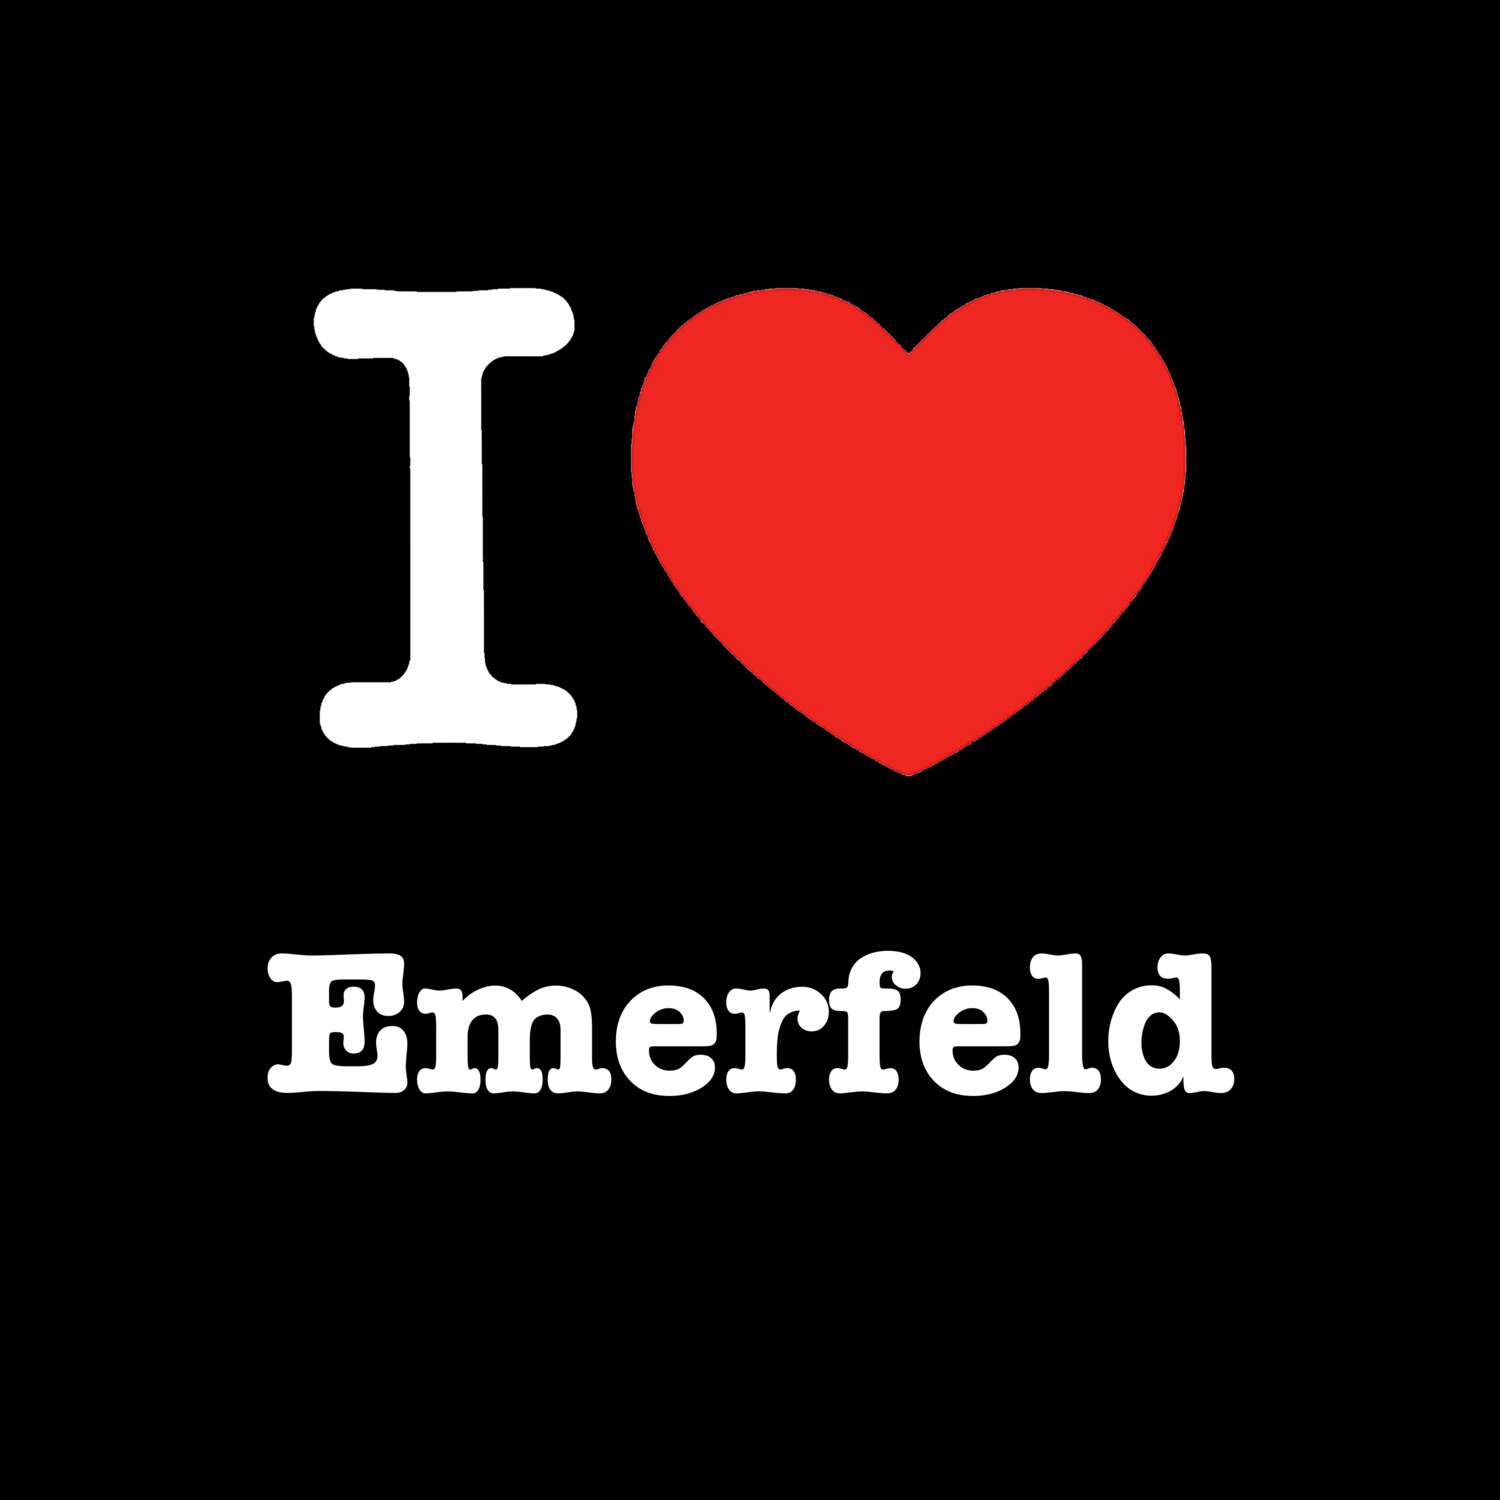 Emerfeld T-Shirt »I love«